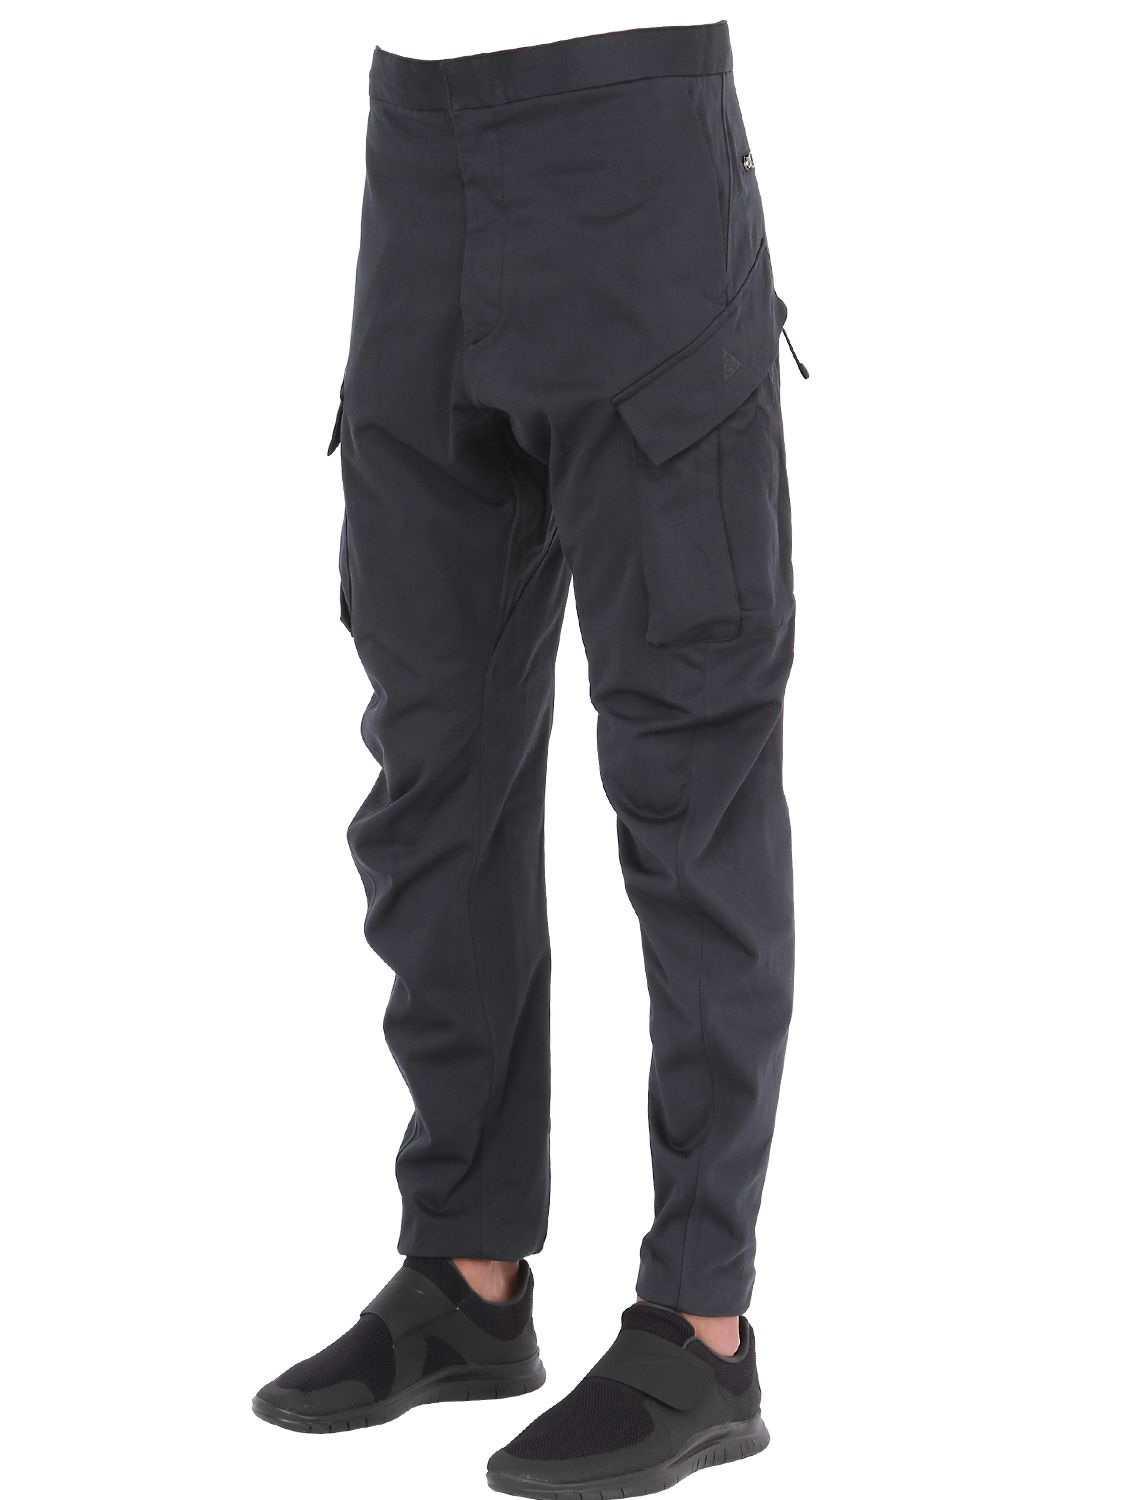 Nike Acg Dwr Tech Wool Blend Cargo Pants in Black for Men - Lyst